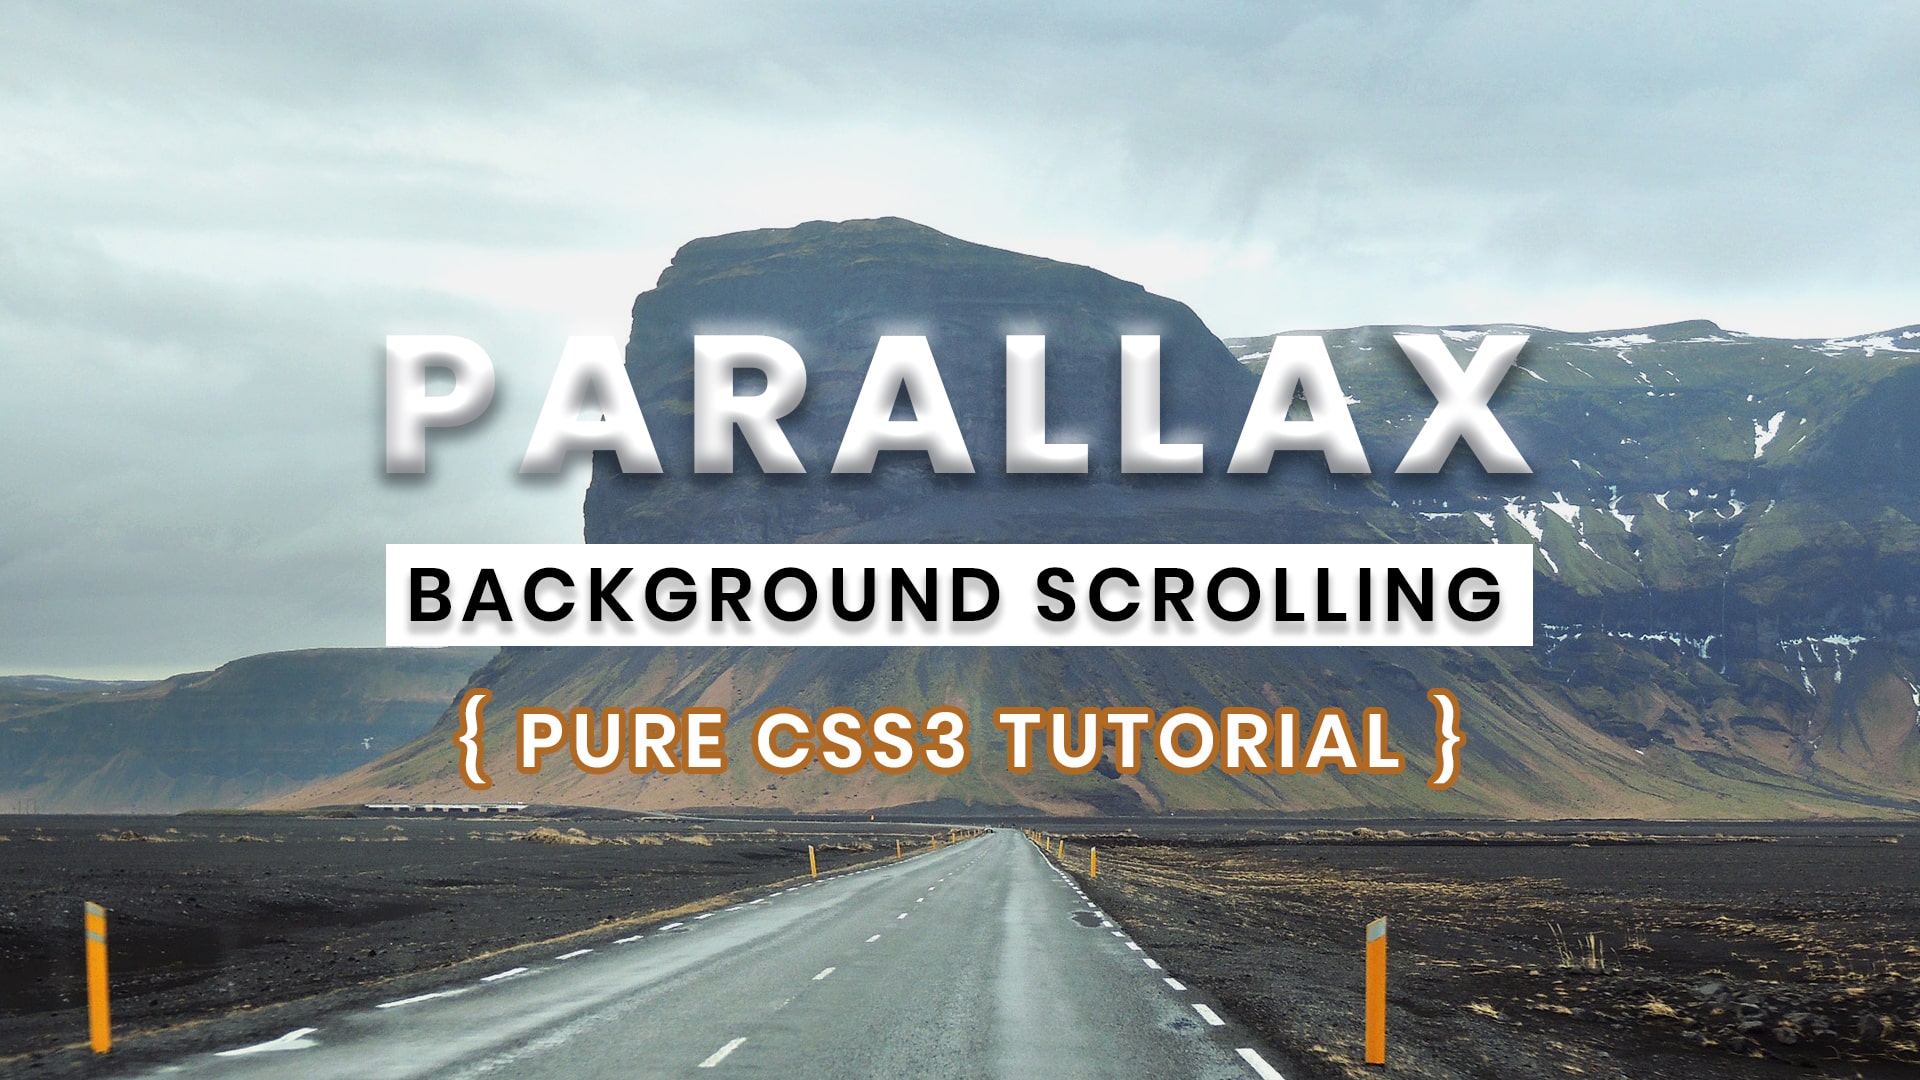 adding 3d parallax effects from stills